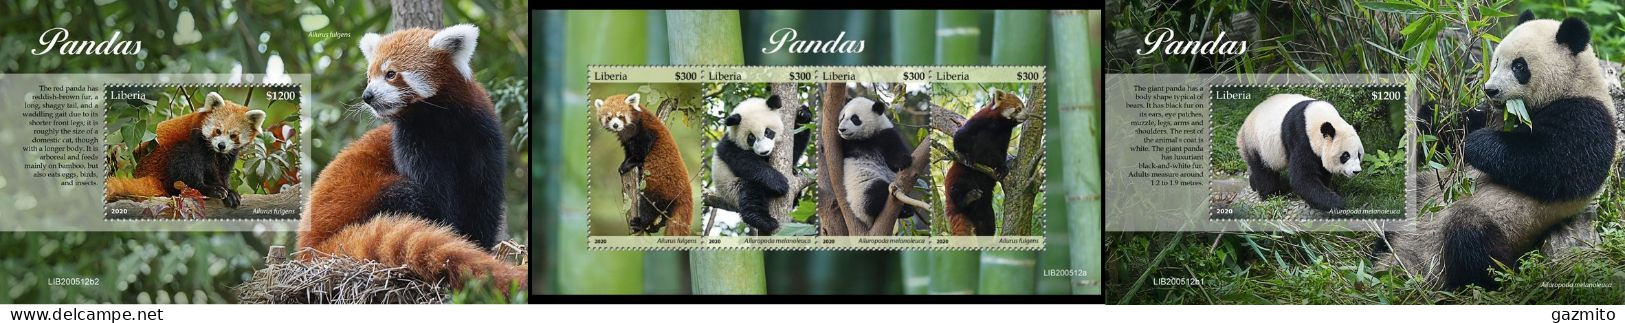 Liberia 2020, Animals, Panda, 4val In BF +2BF - Bären